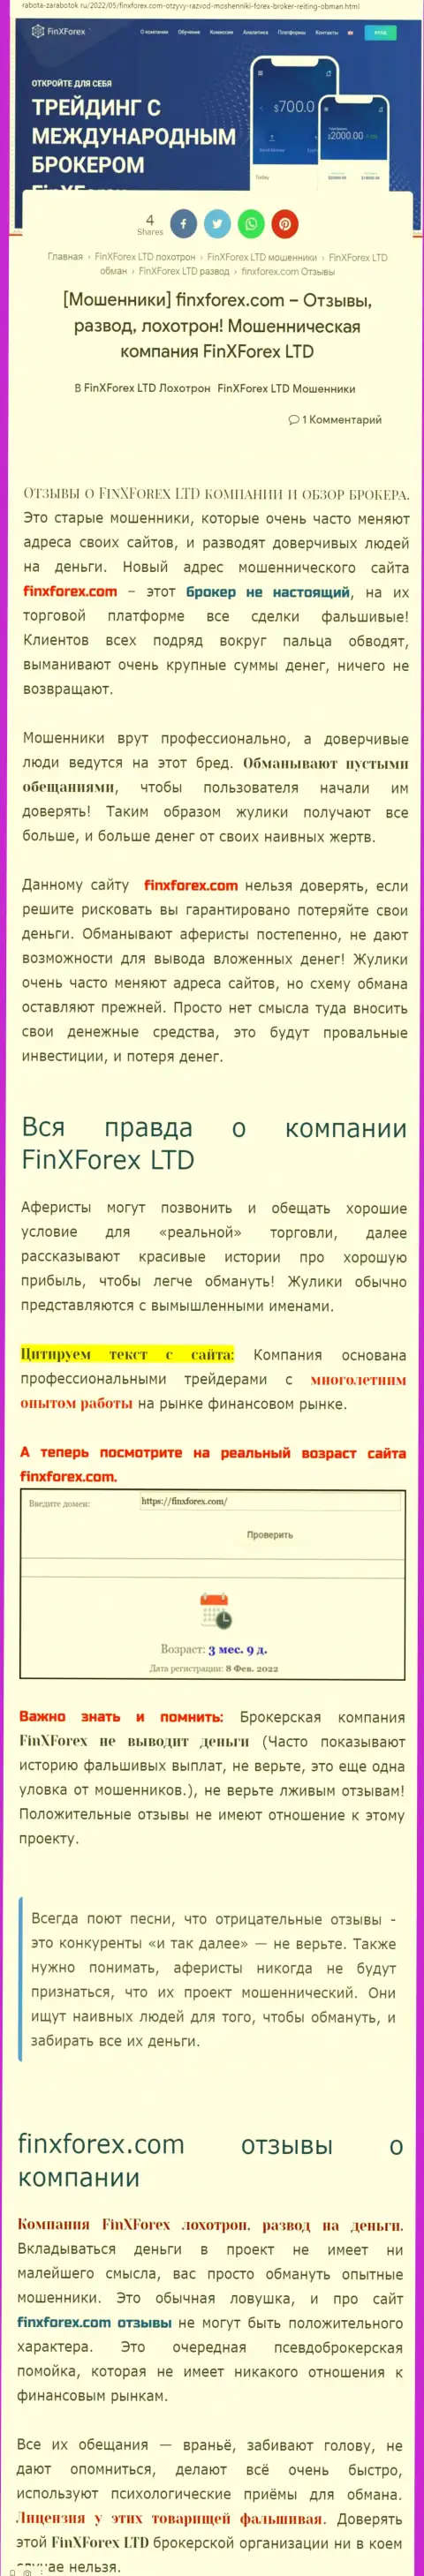 Автор обзора о FinXForex LTD утверждает, что в конторе FinXForex дурачат